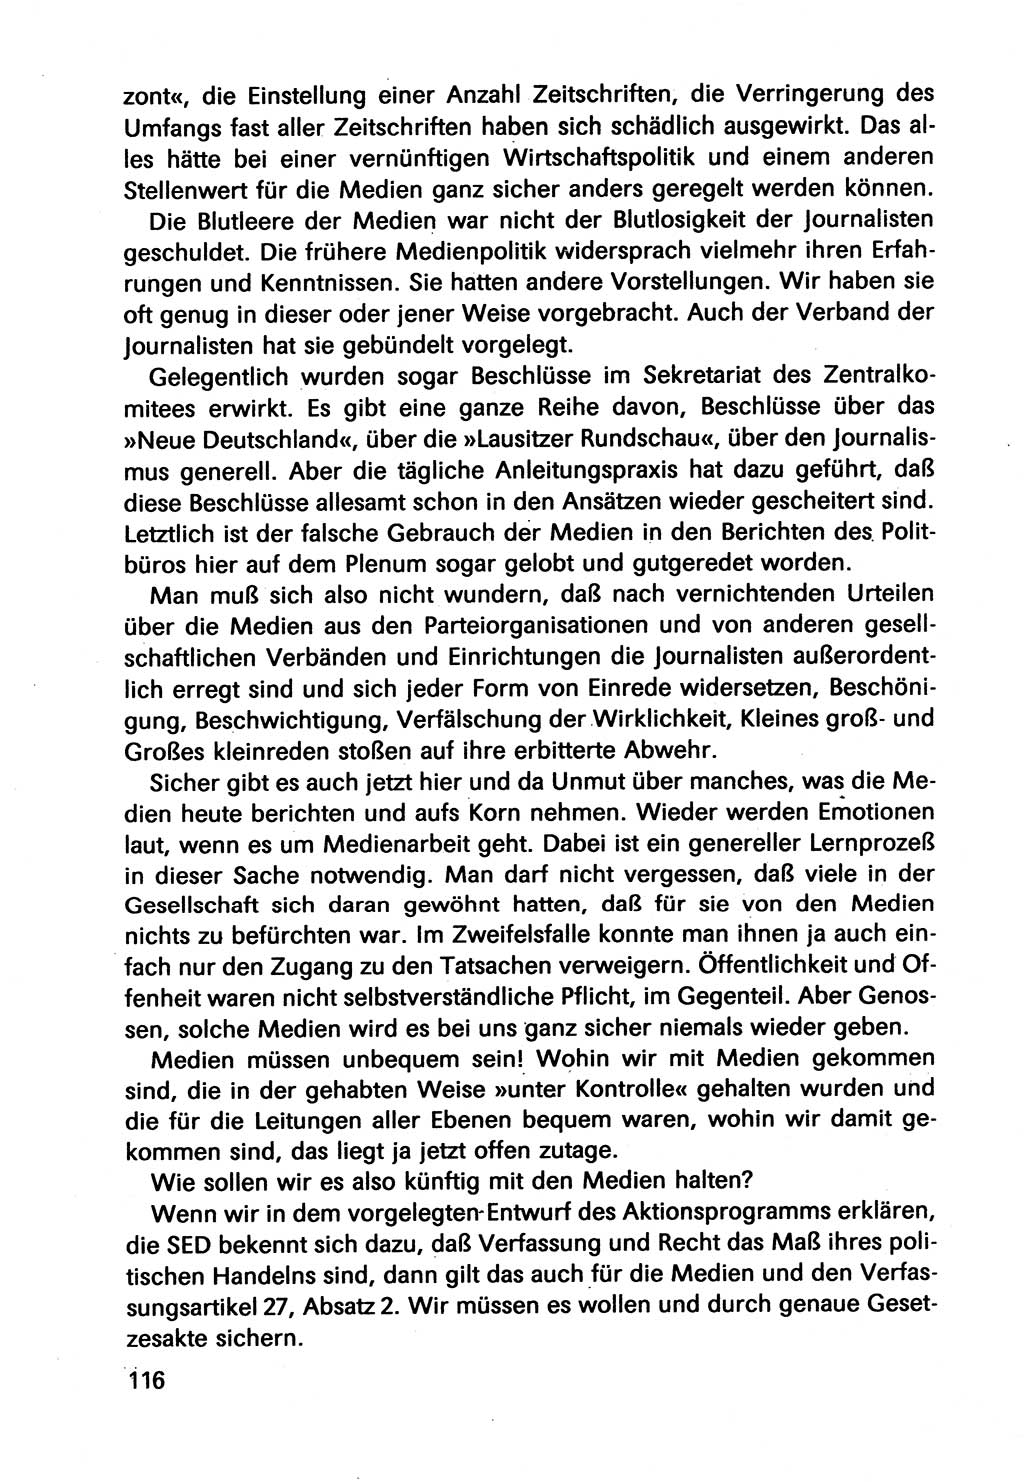 Diskussionsbeiträge, 10. Tagung des ZK (Zentralkomitee) der SED (Sozialistische Einheitspartei Deutschlands) [Deutsche Demokratische Republik (DDR)] 1989, Seite 116 (Disk.-Beitr. 10. Tg. ZK SED DDR 1989, S. 116)